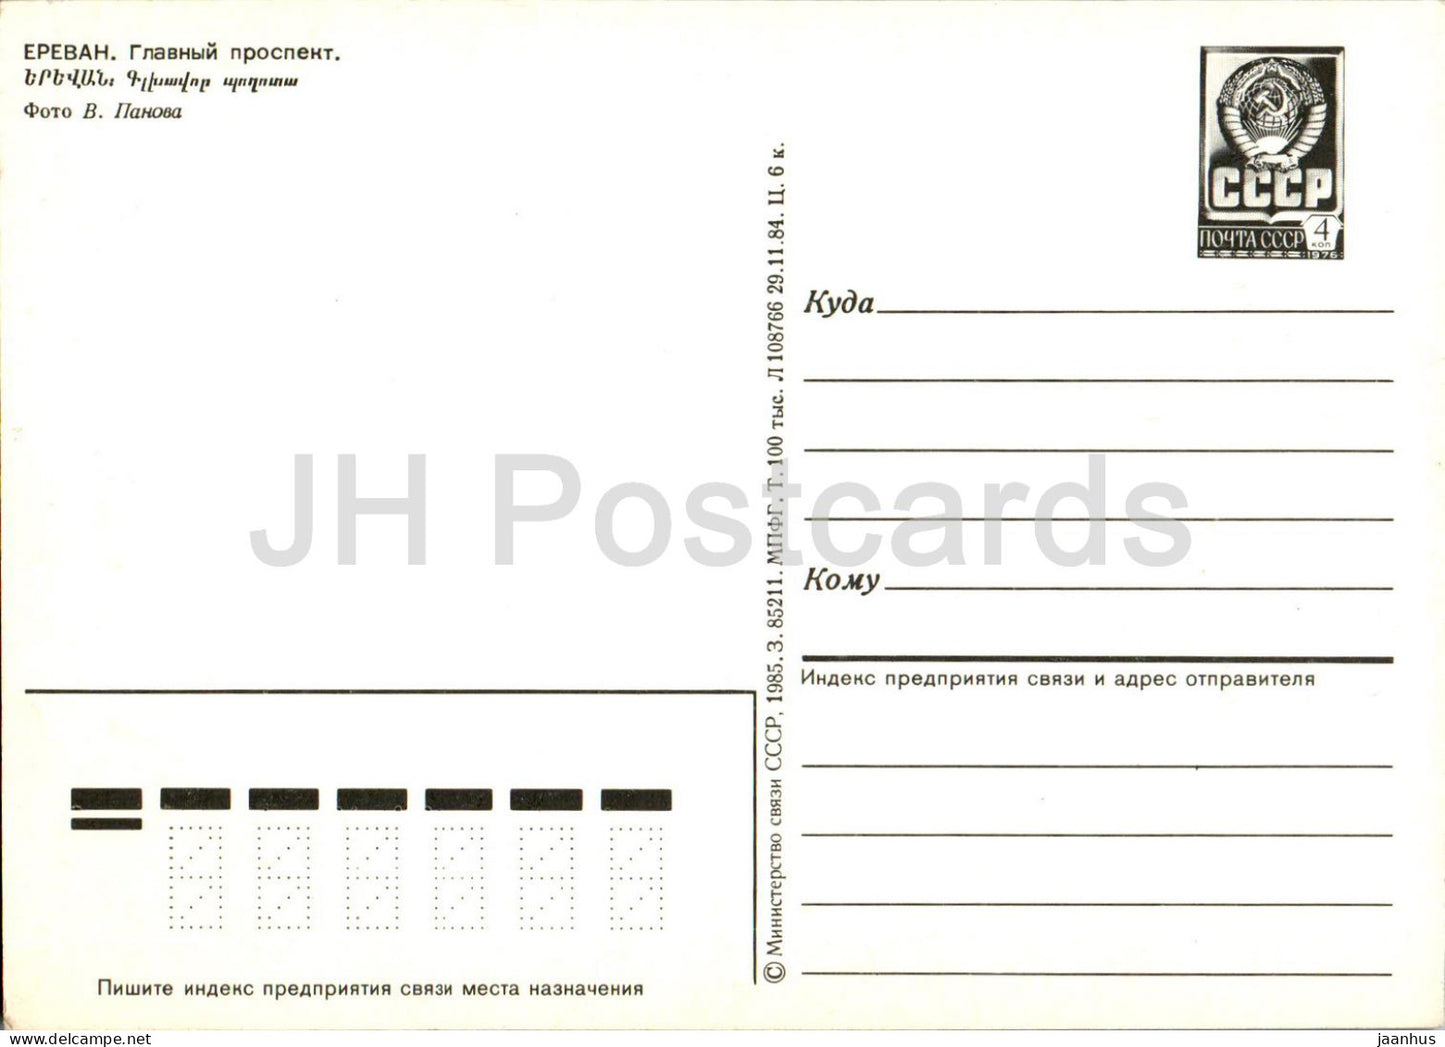 Yerevan - Main prospekt - postal stationery - 1985 - Armenia USSR - unused